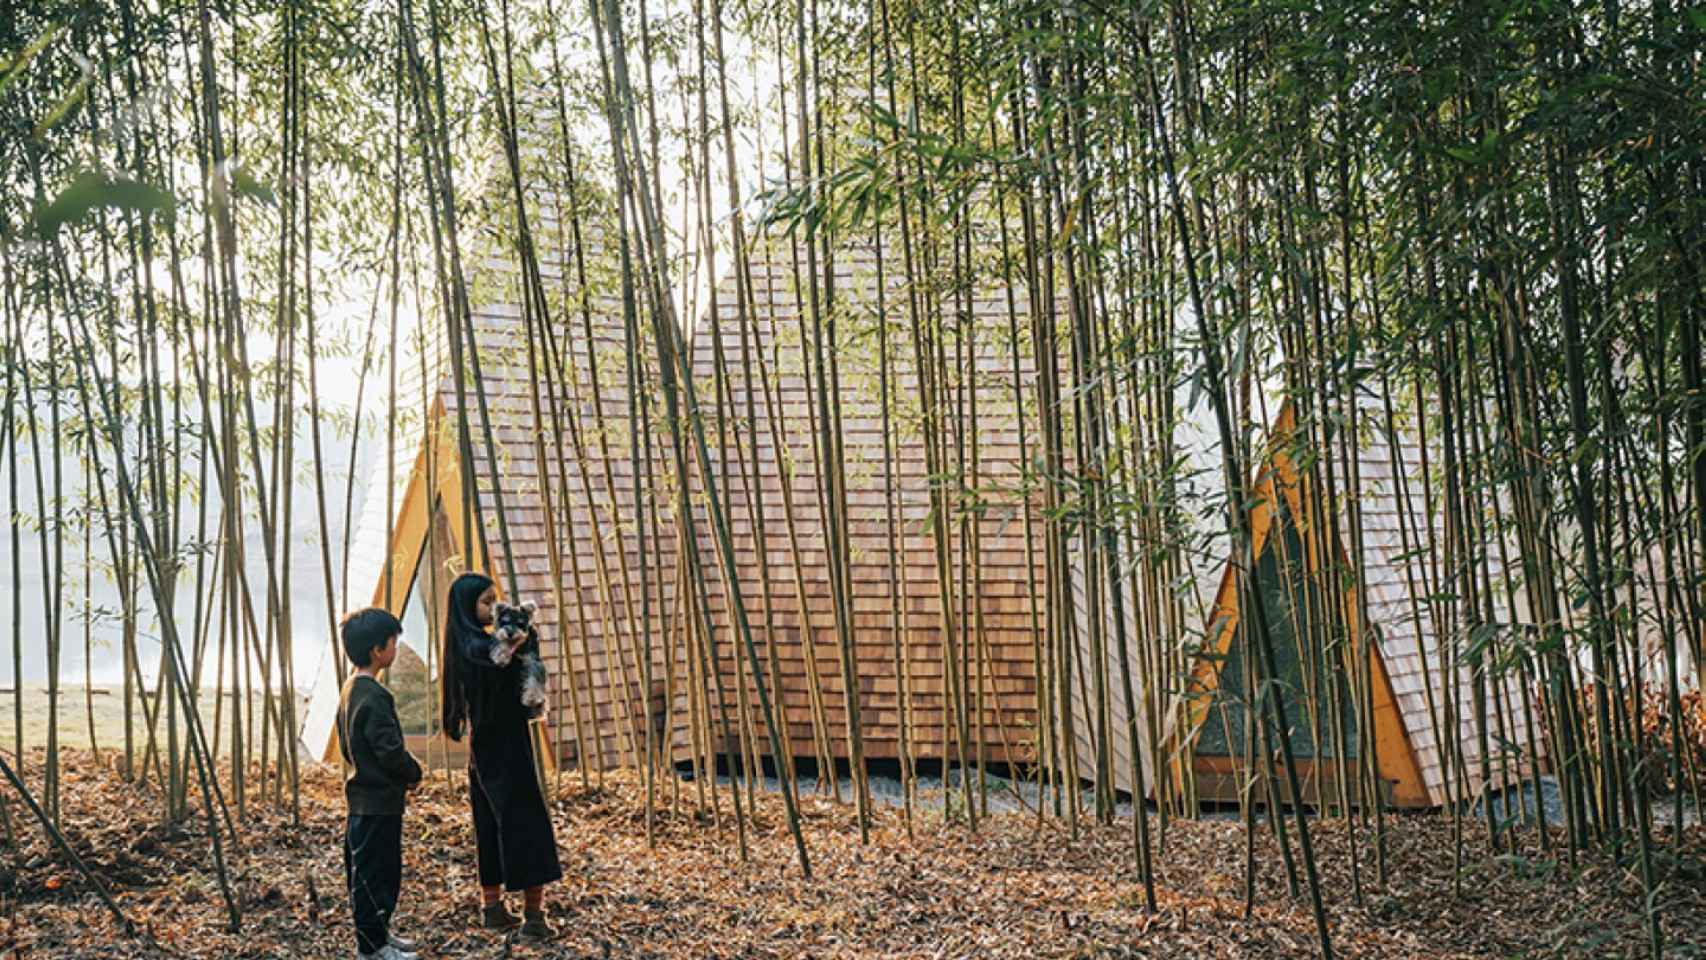 La cabaña rodeada por bambú.